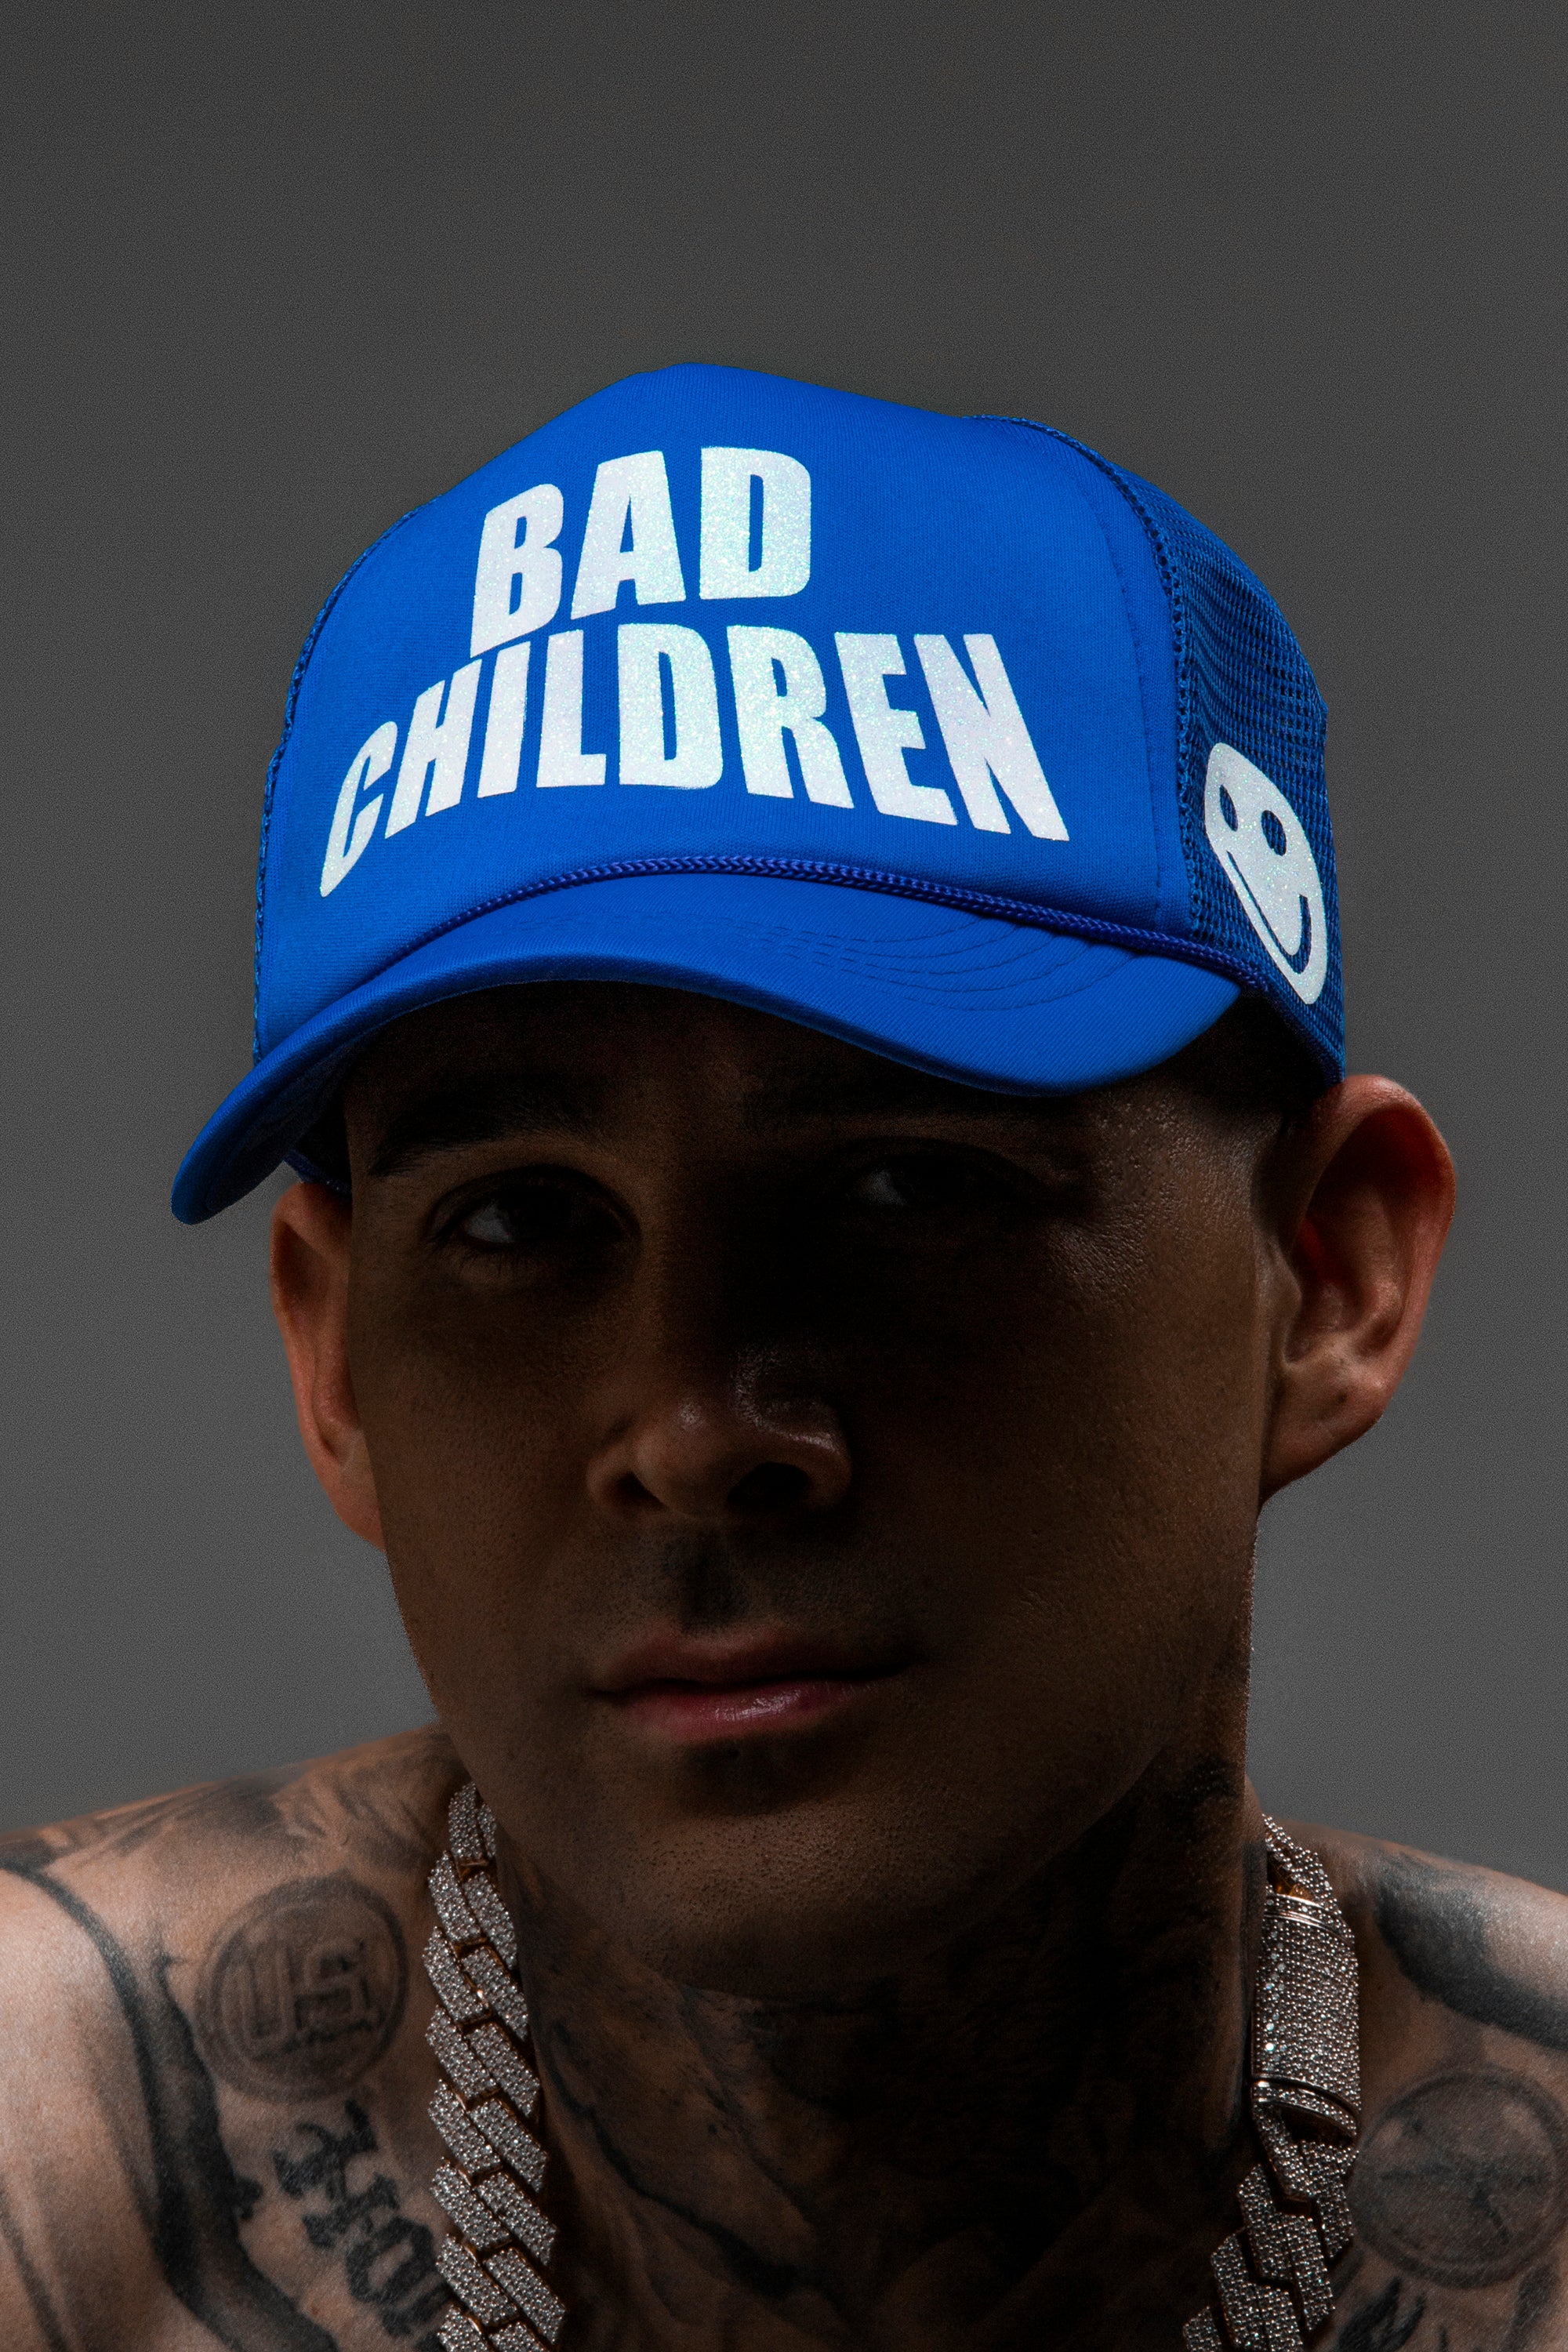 BAD CHILDREN BLUE HAT – Bad Children